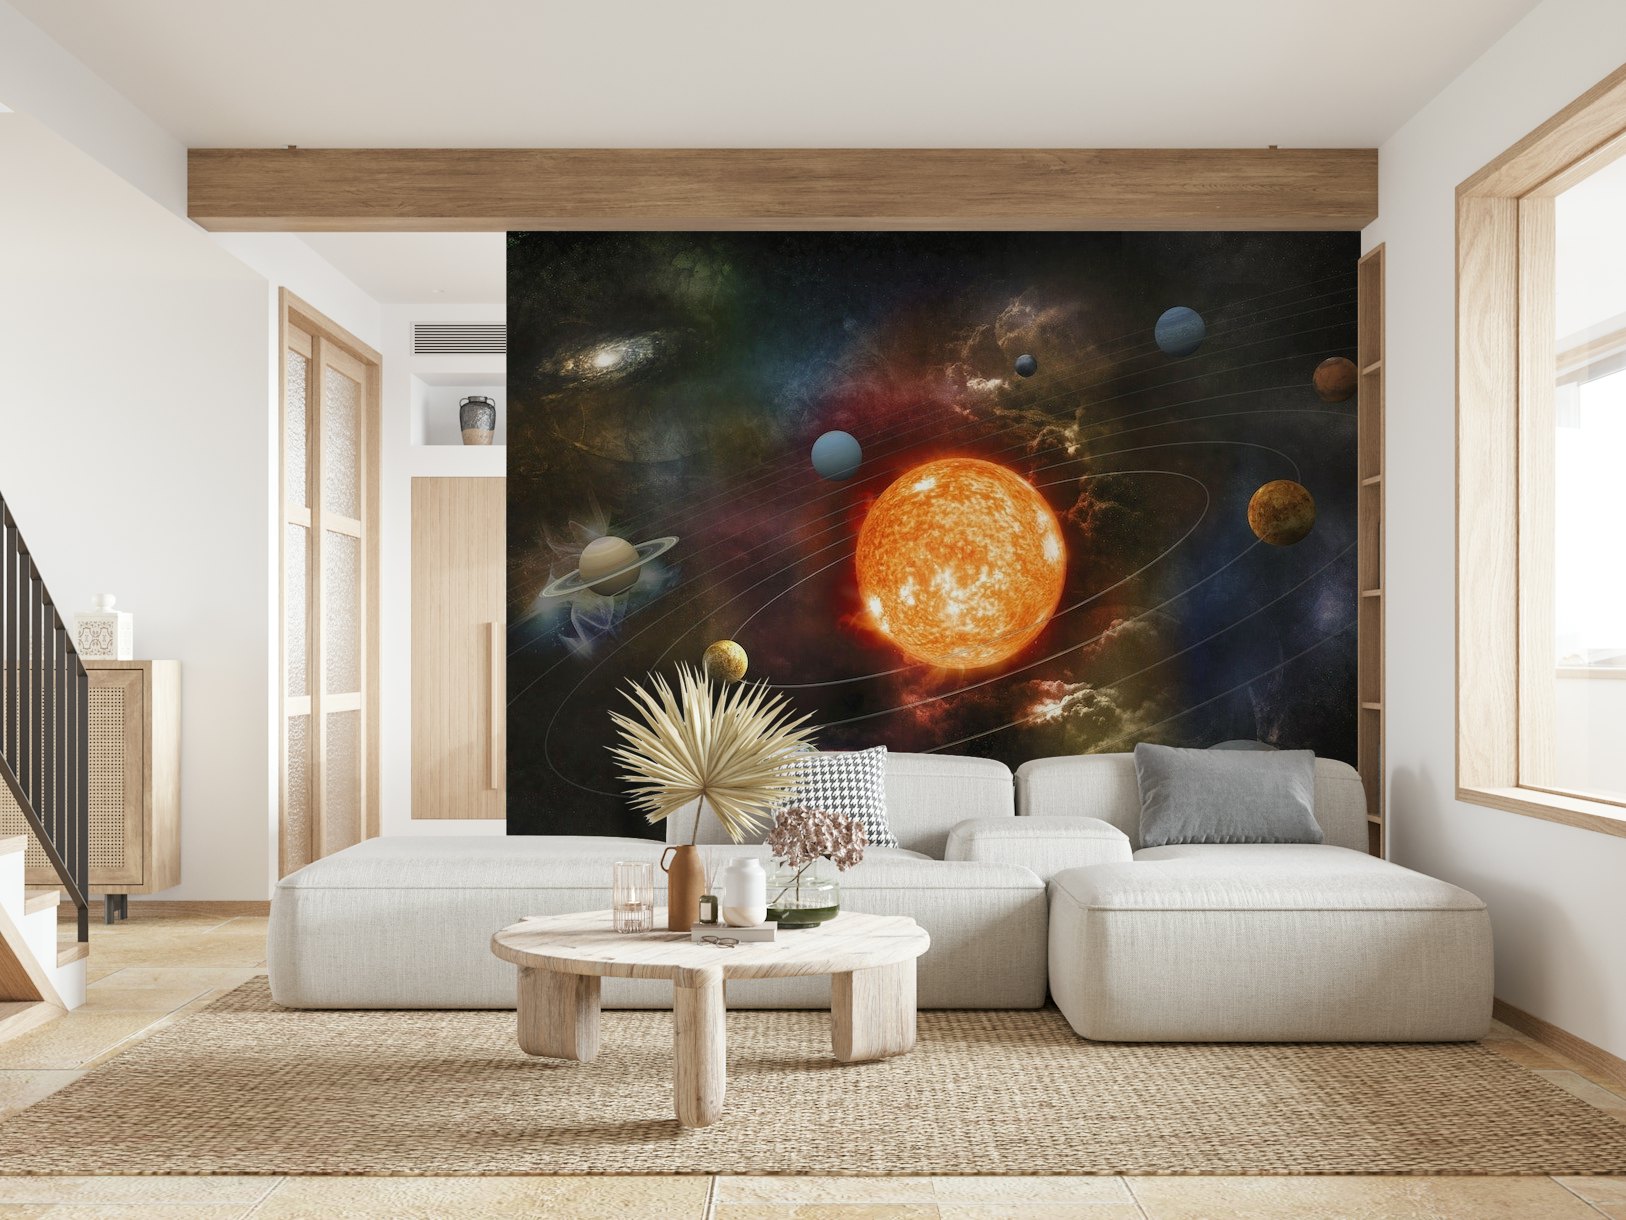 Solar system wallpaper